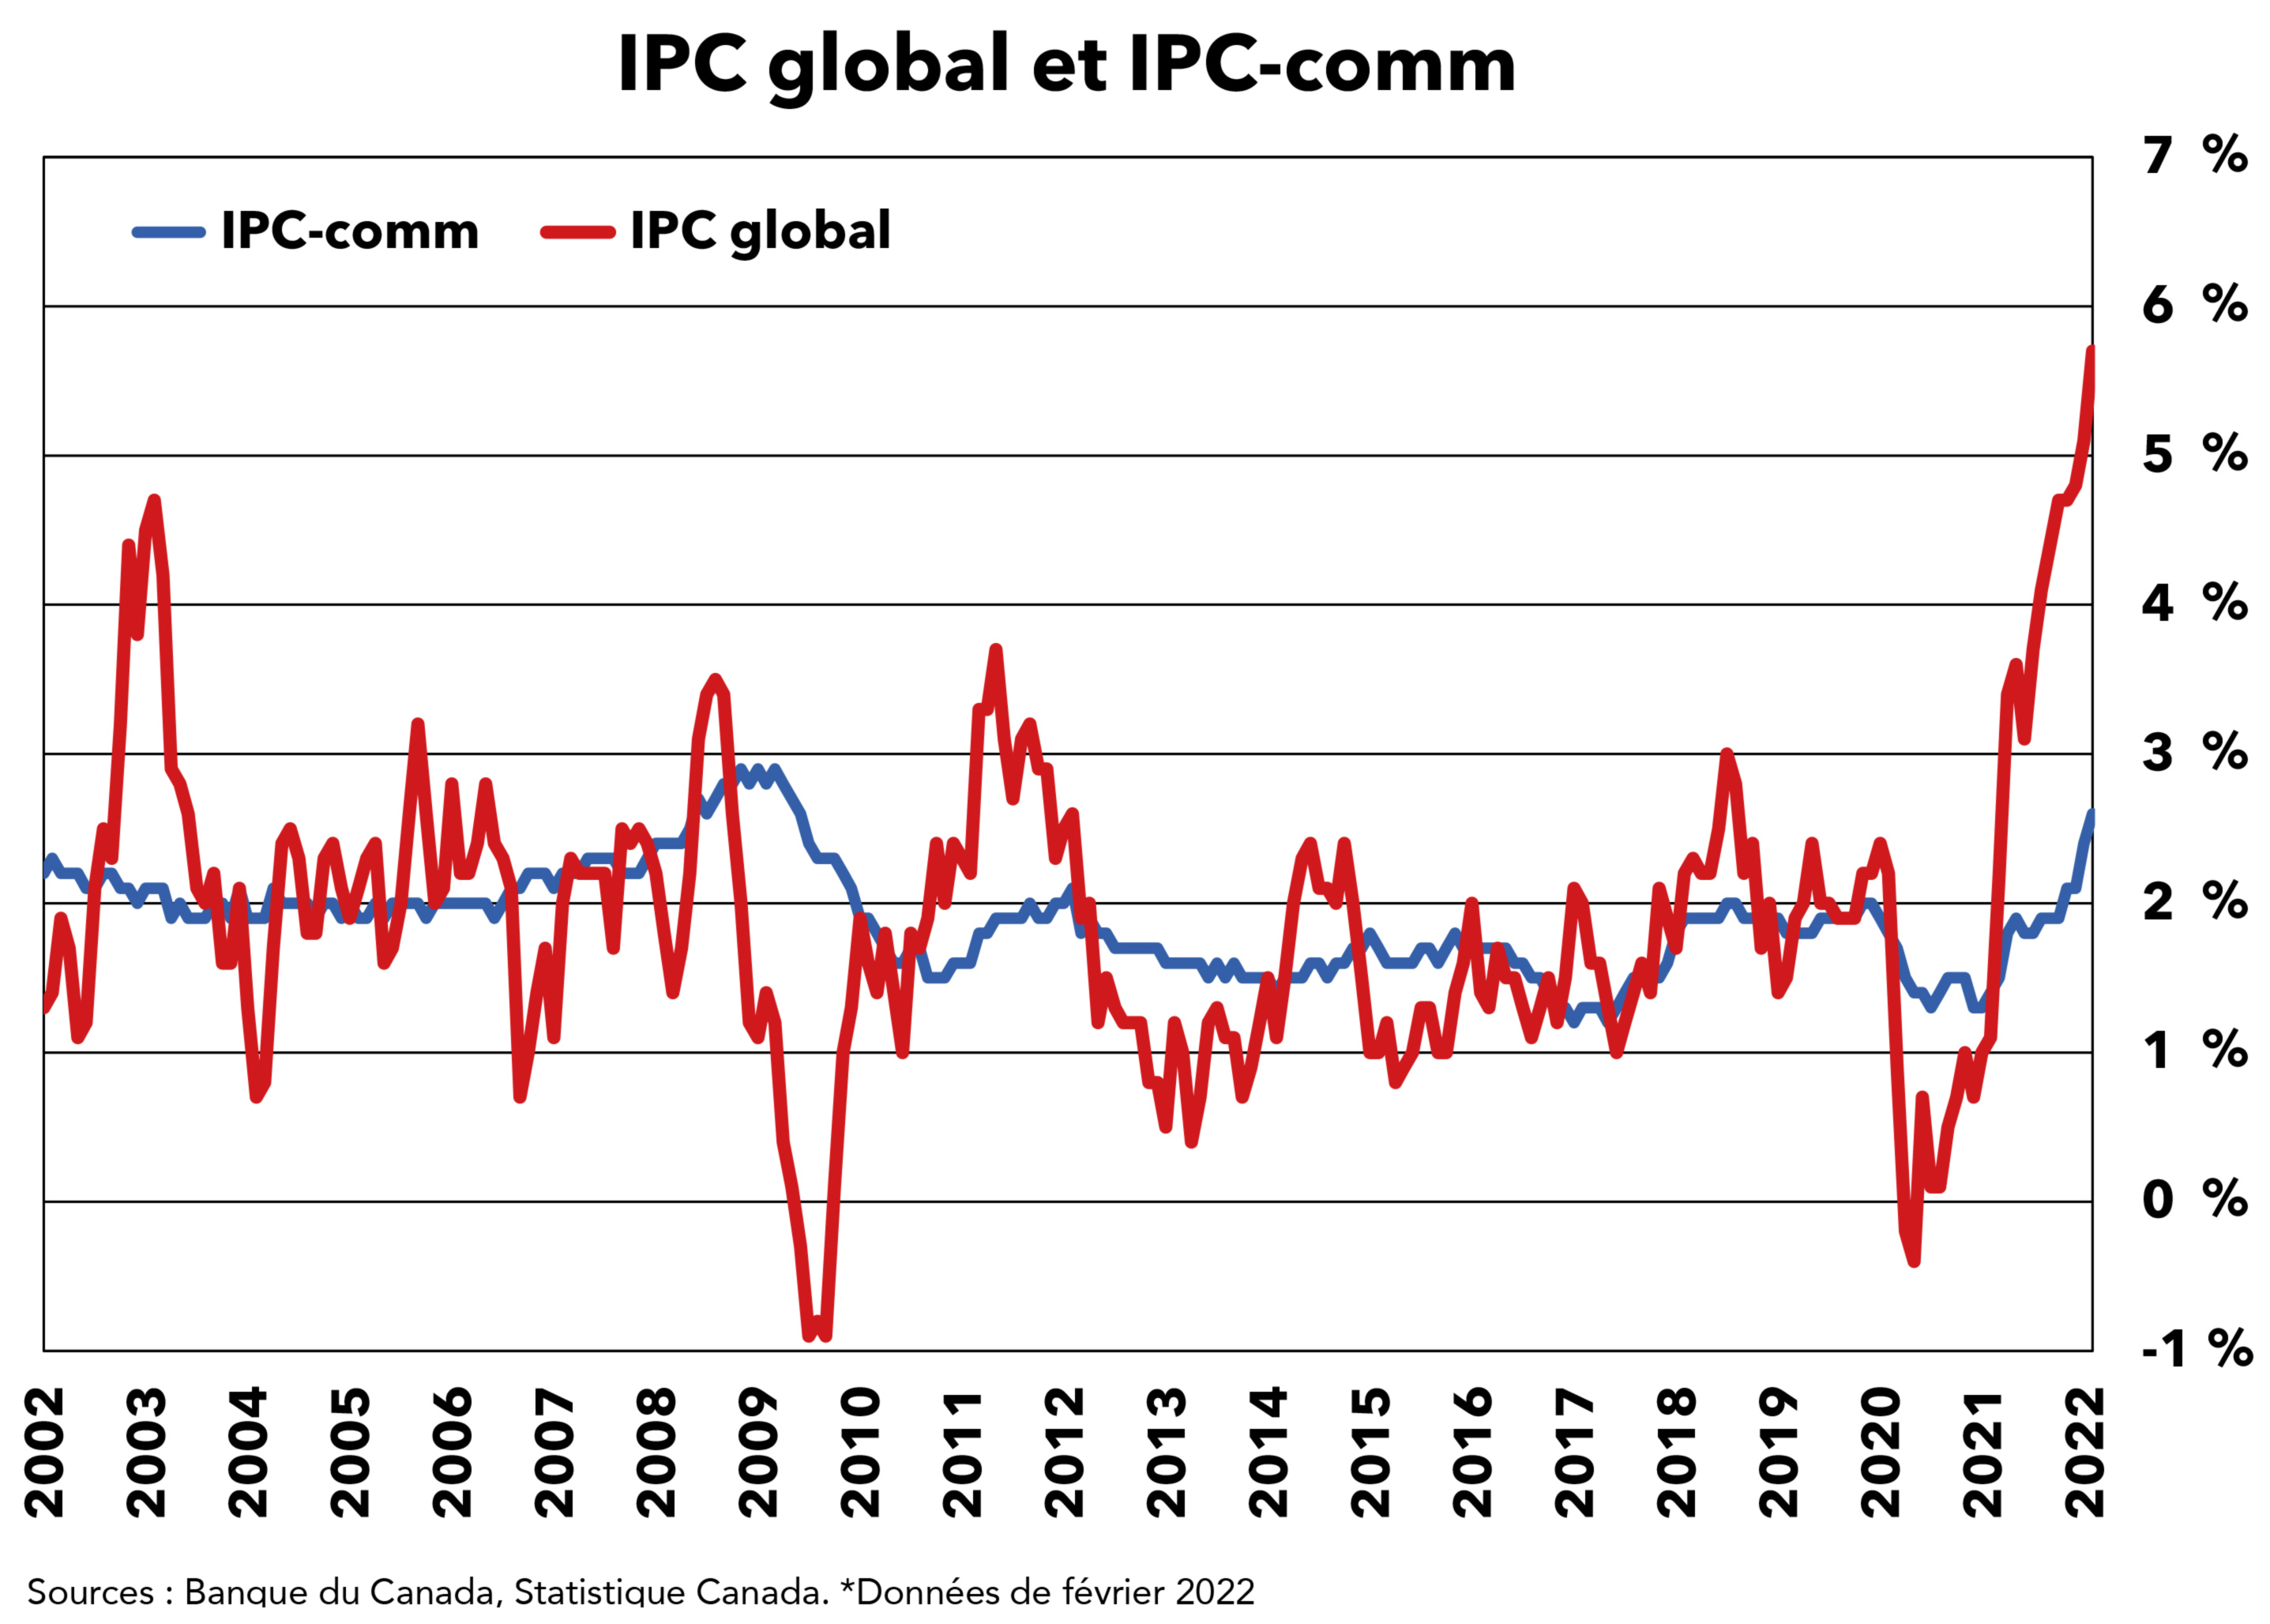 IPC global, IPC-comm et fourchette cible